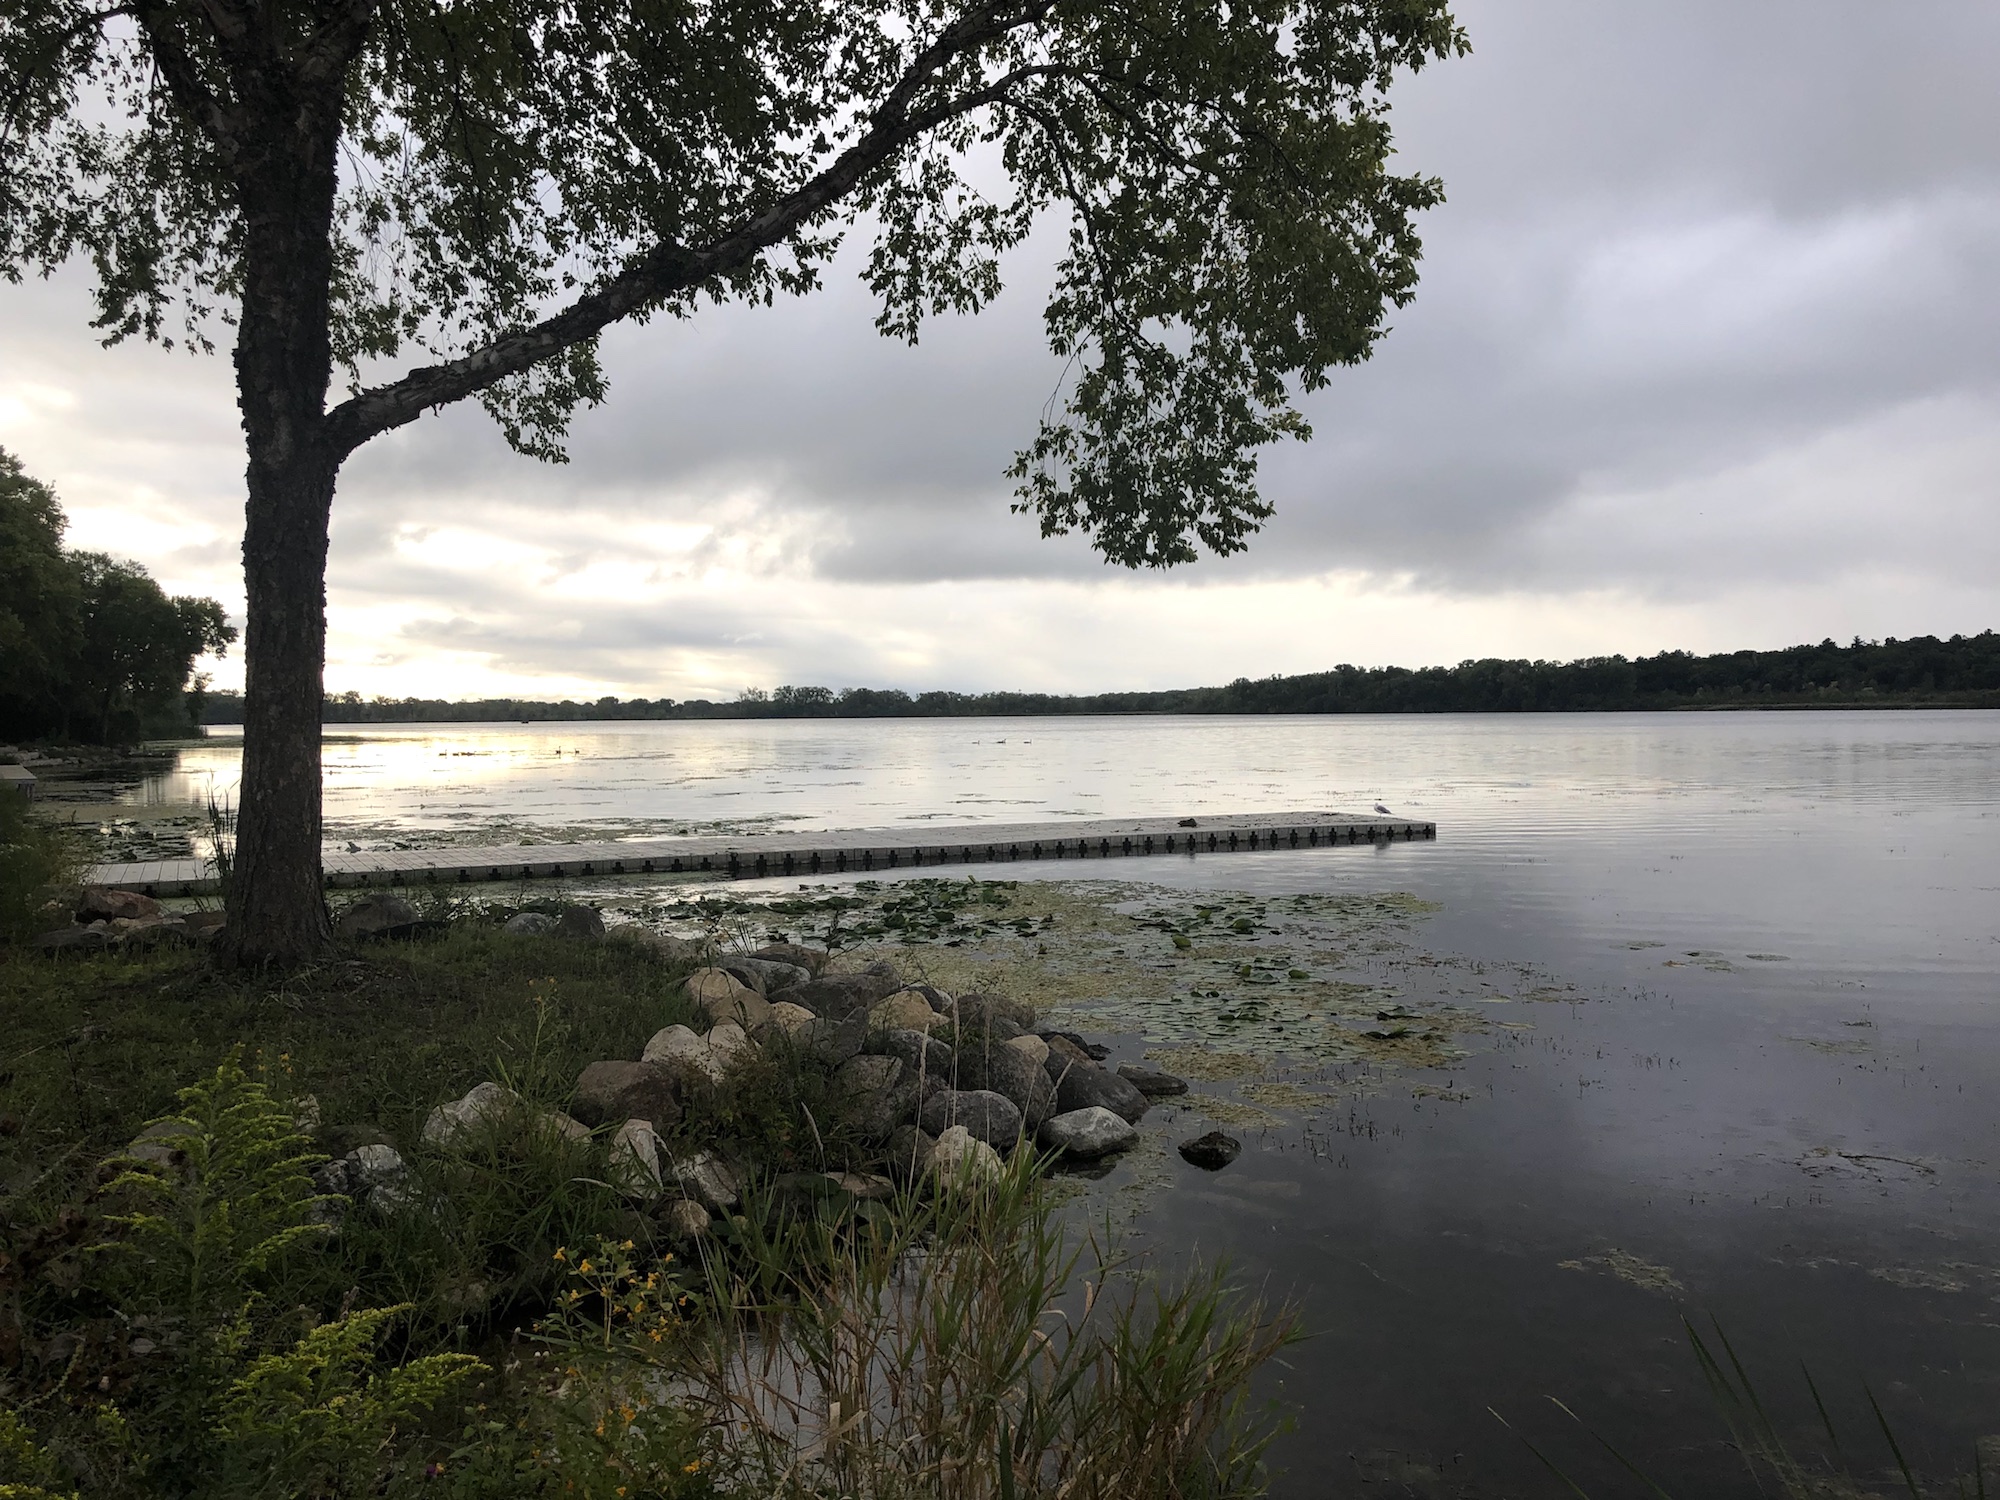 Lake Wingra on September 4, 2019.